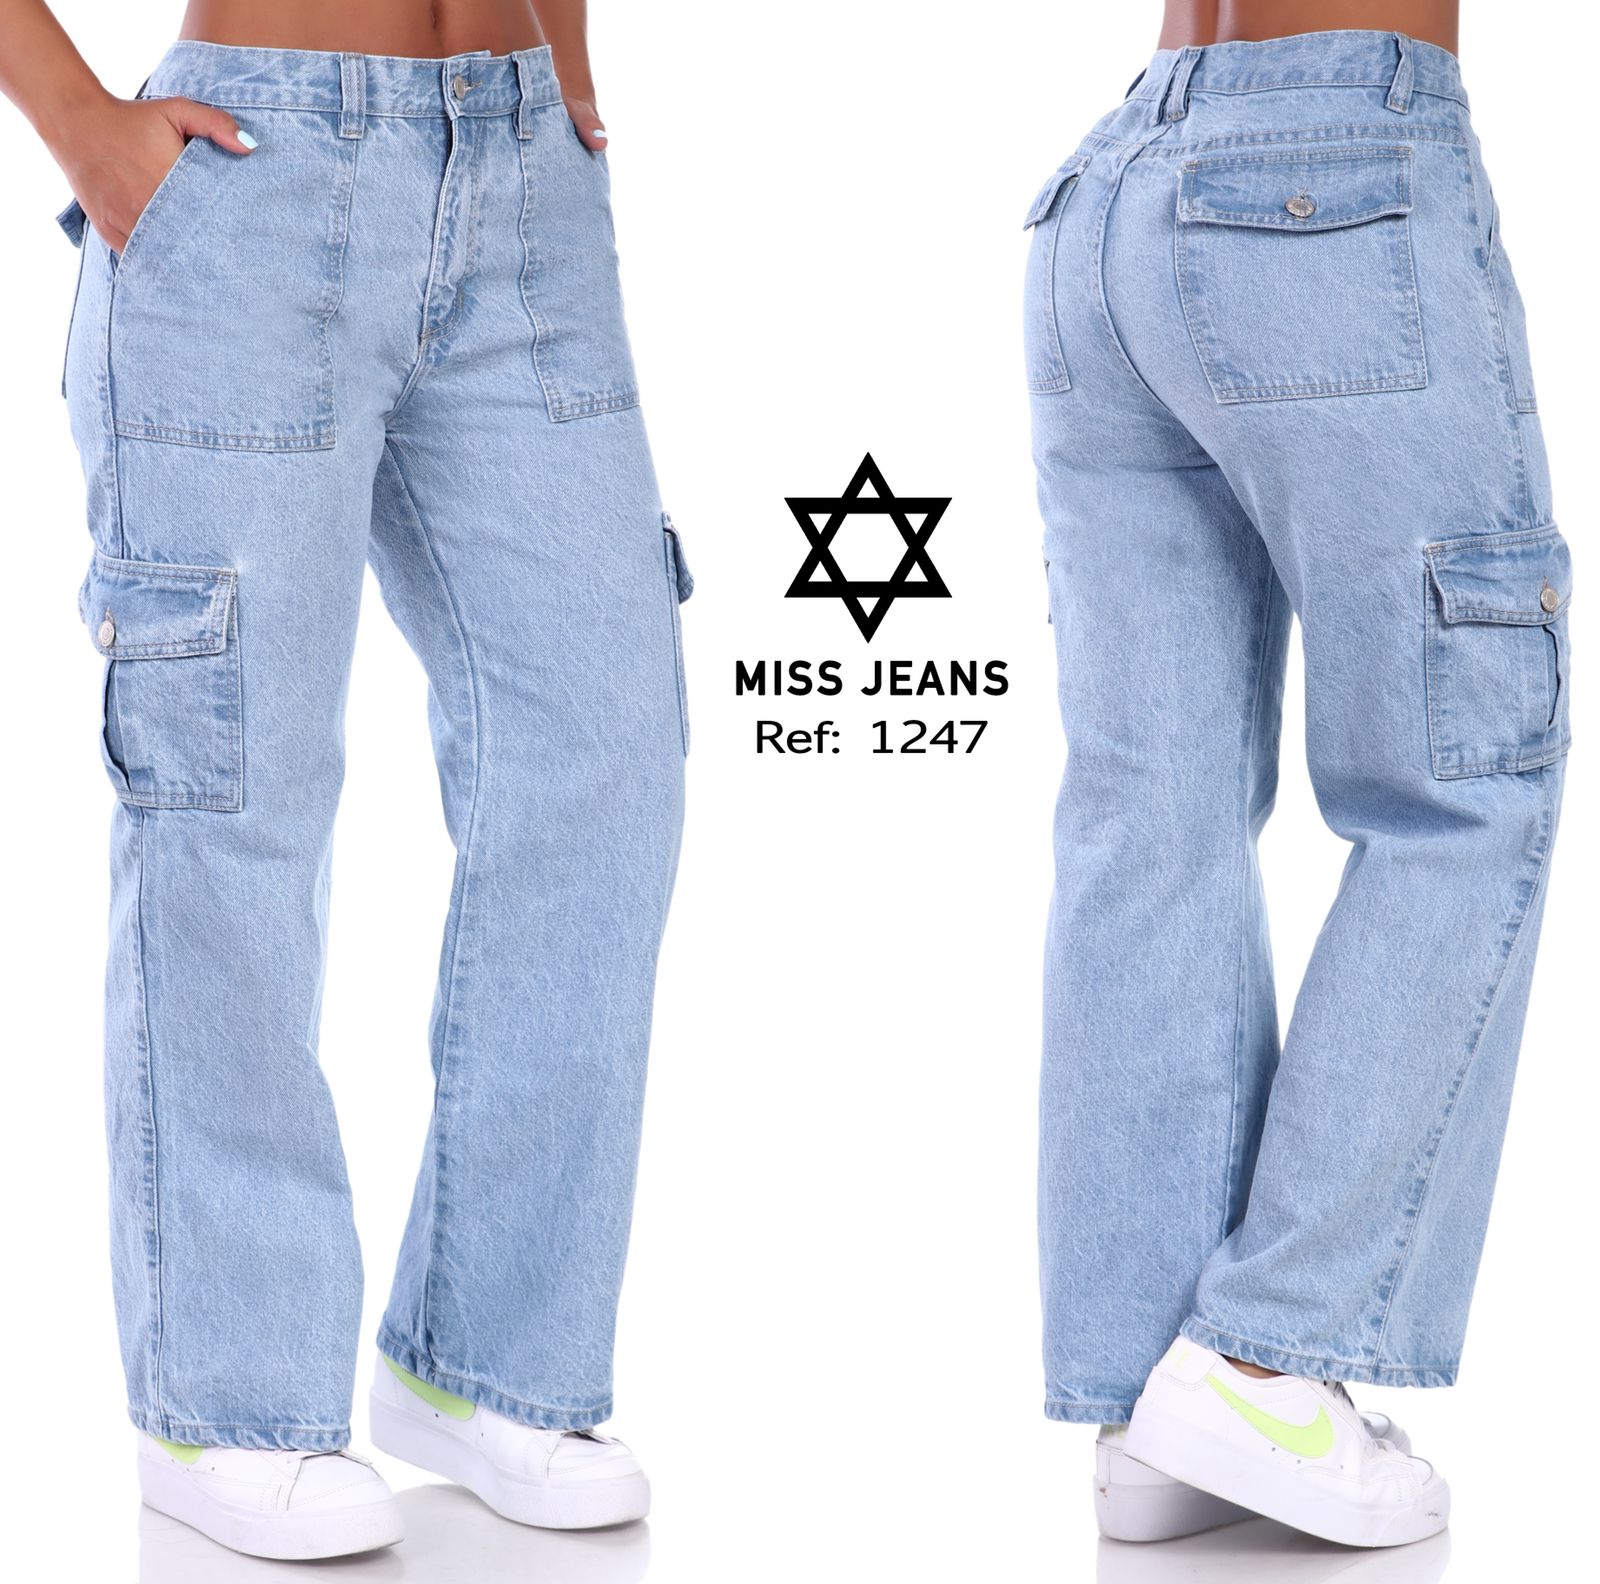 jeans industriales - Central de Suministros Gspath